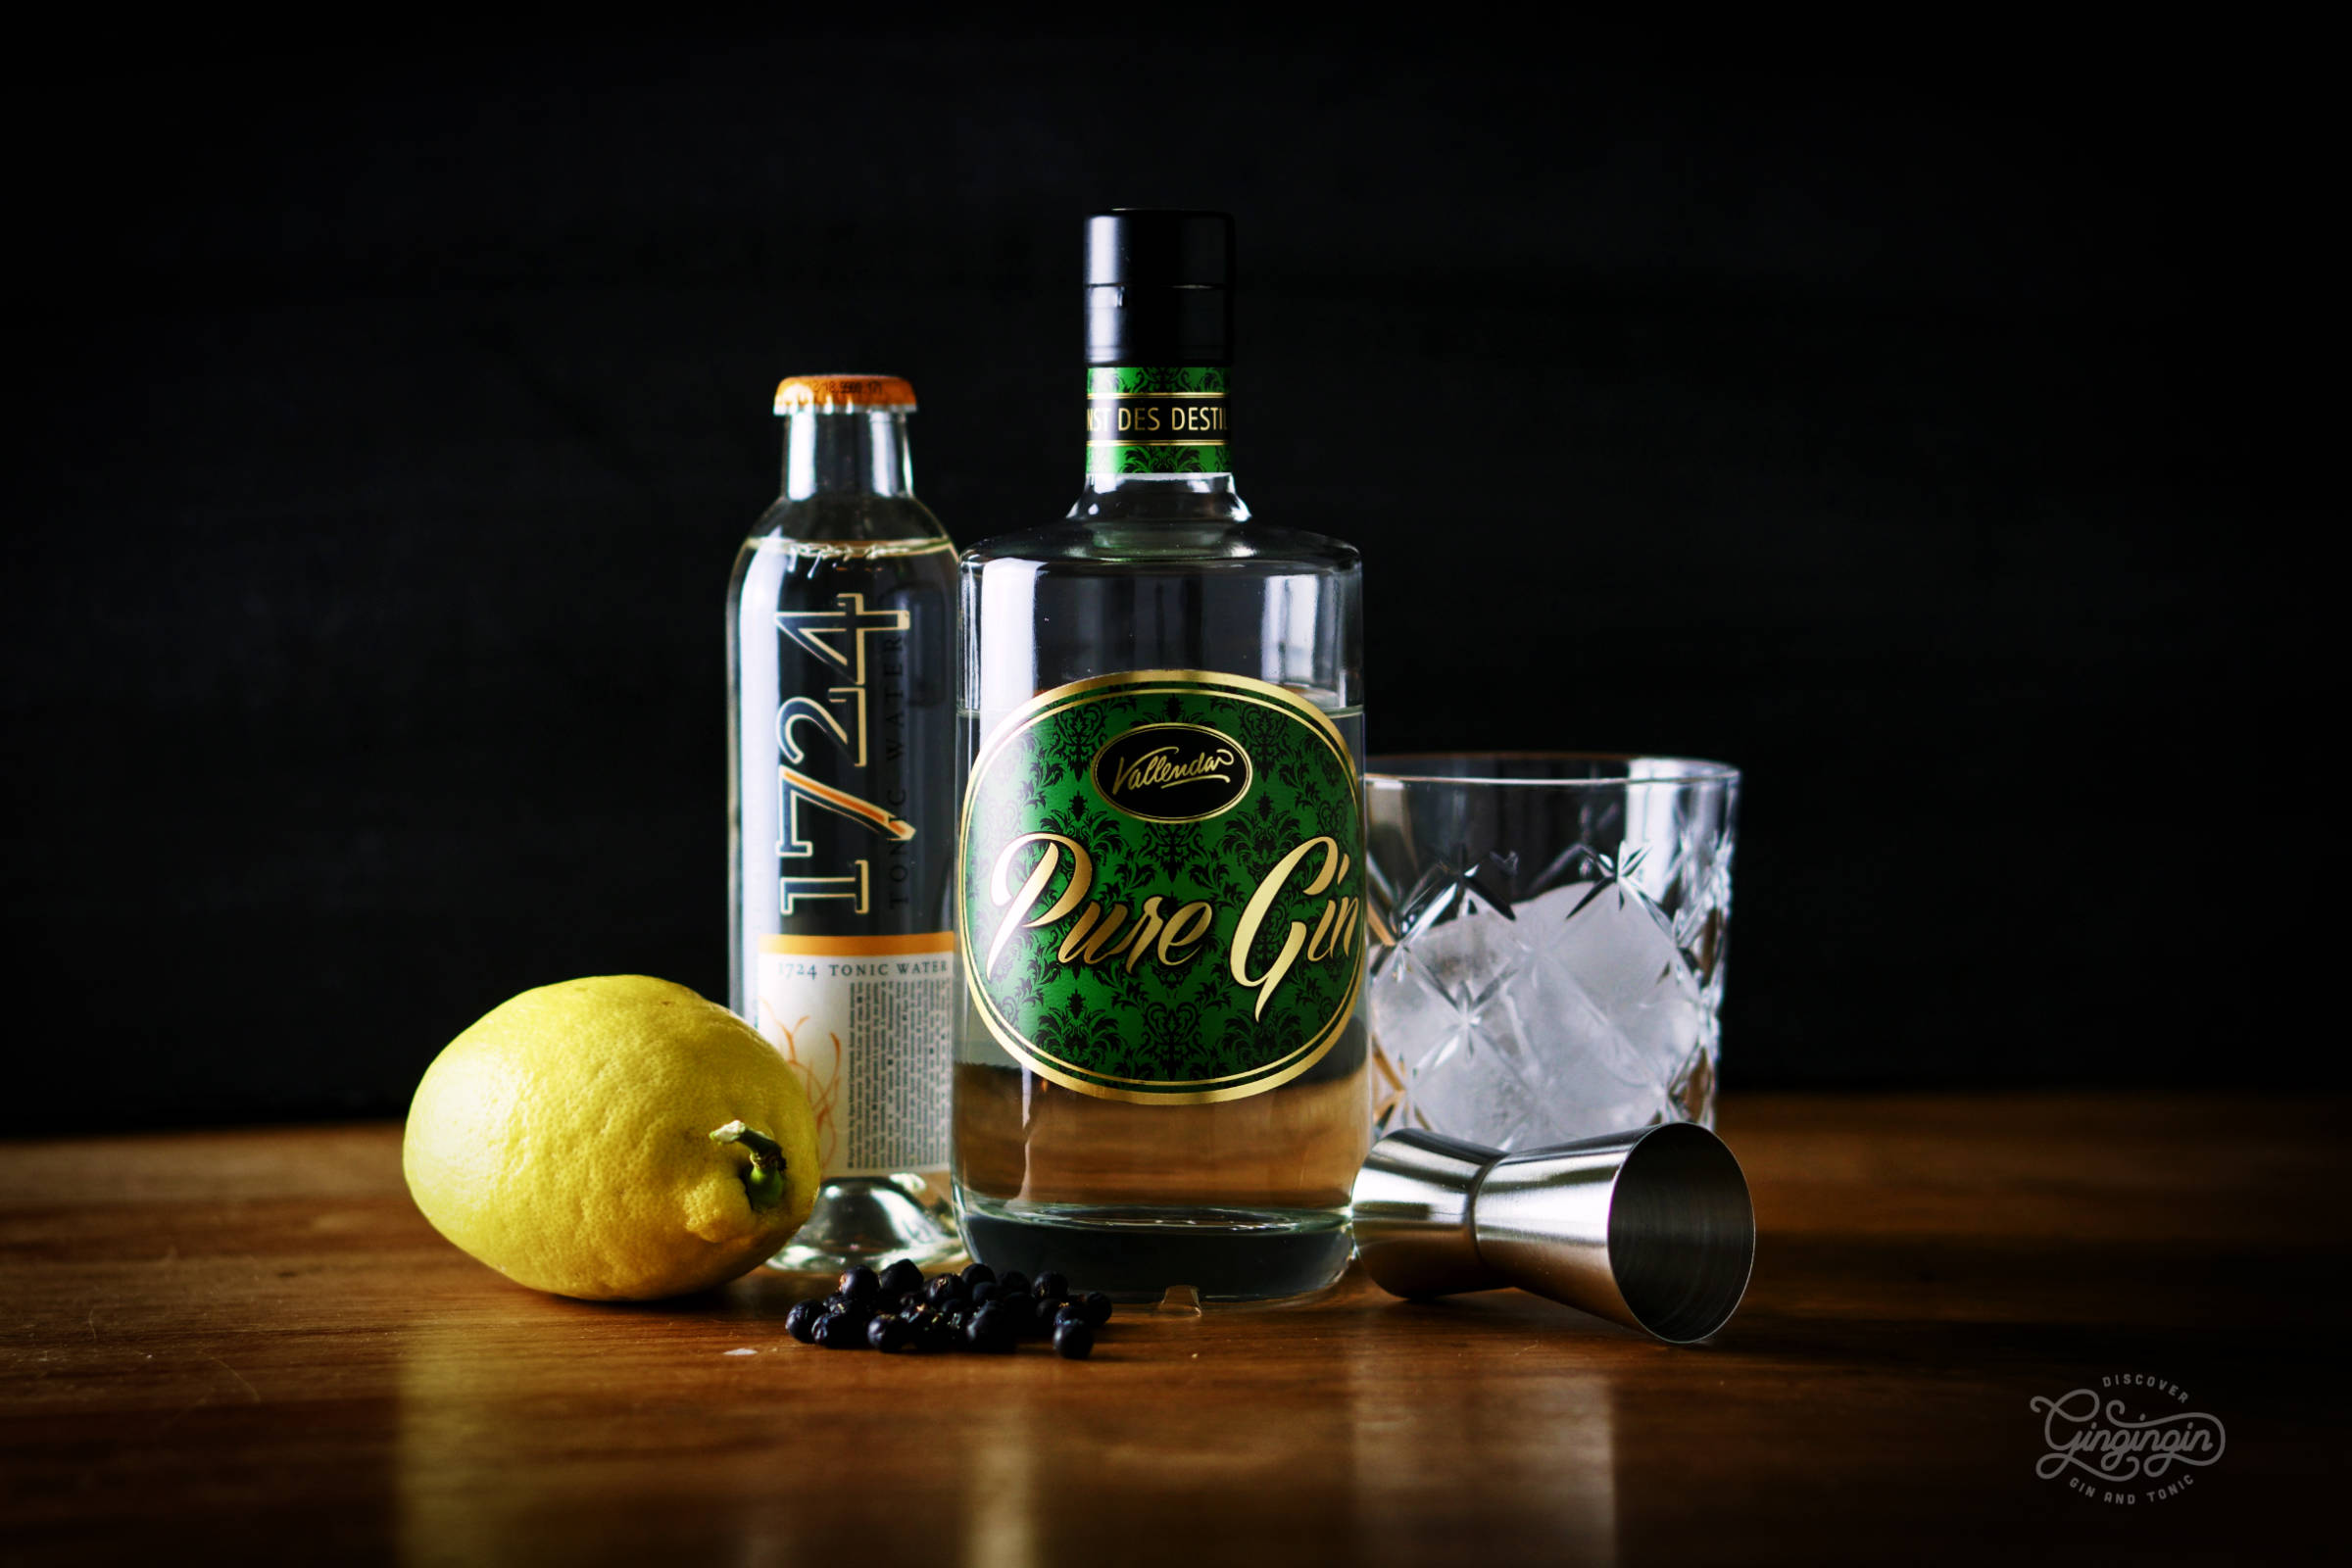 Die ursprüngliche Flasche Pure Gin von der Brennerei Hubertus Vallendar